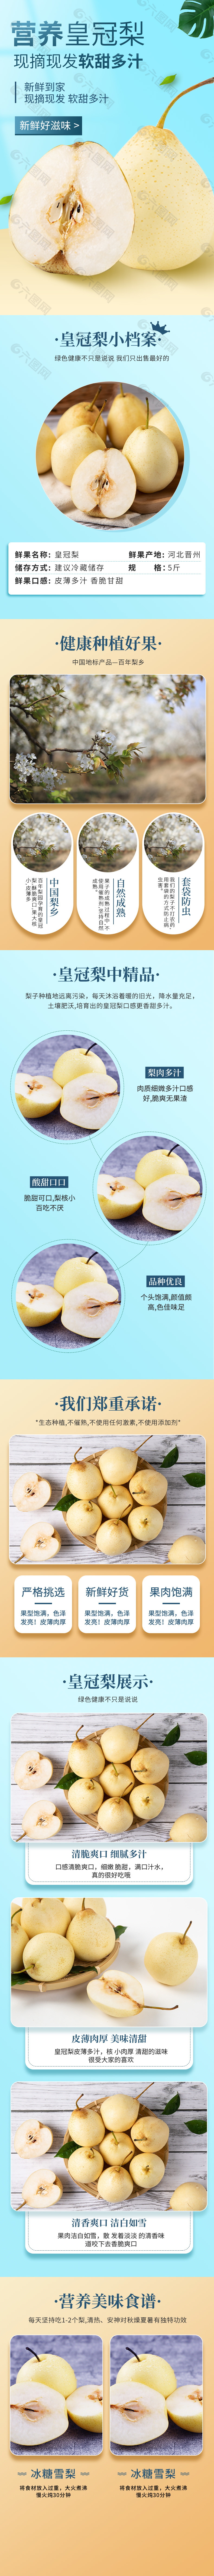 小清新电商皇冠梨水果产品描述详情页下载